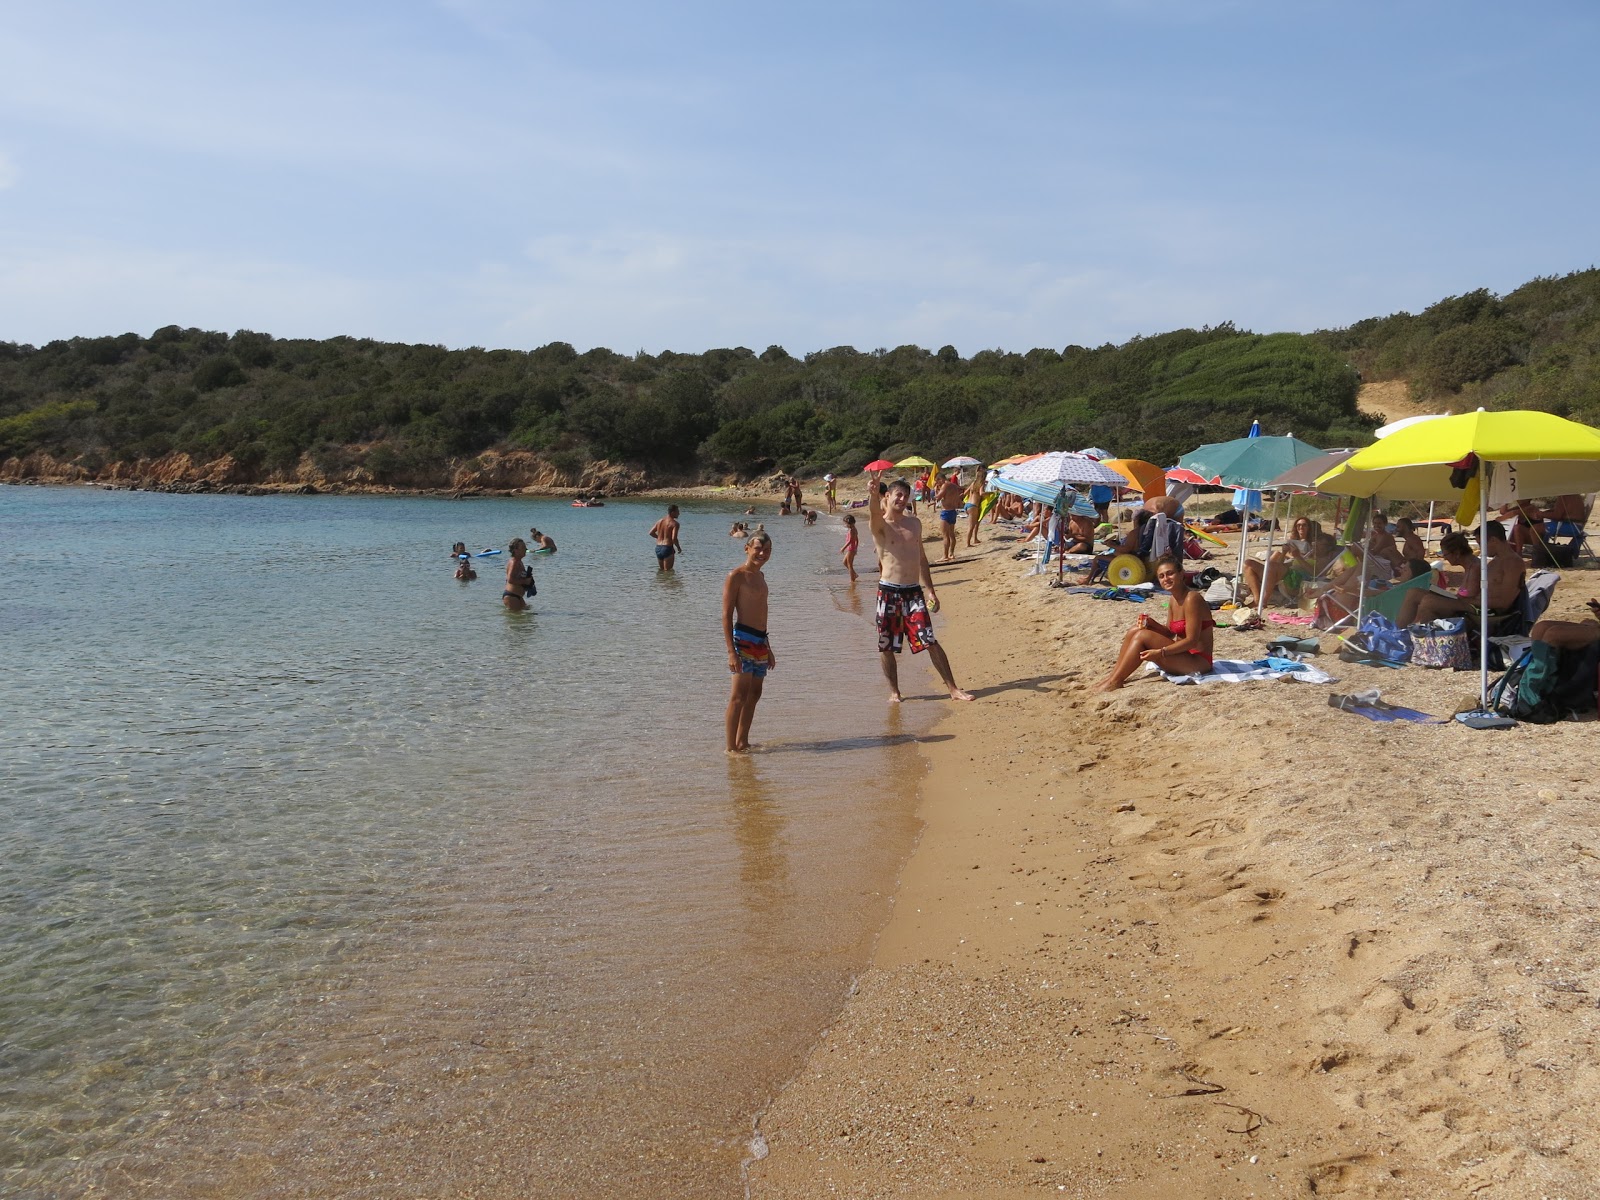 Fotografija Porto Palma beach nahaja se v naravnem okolju